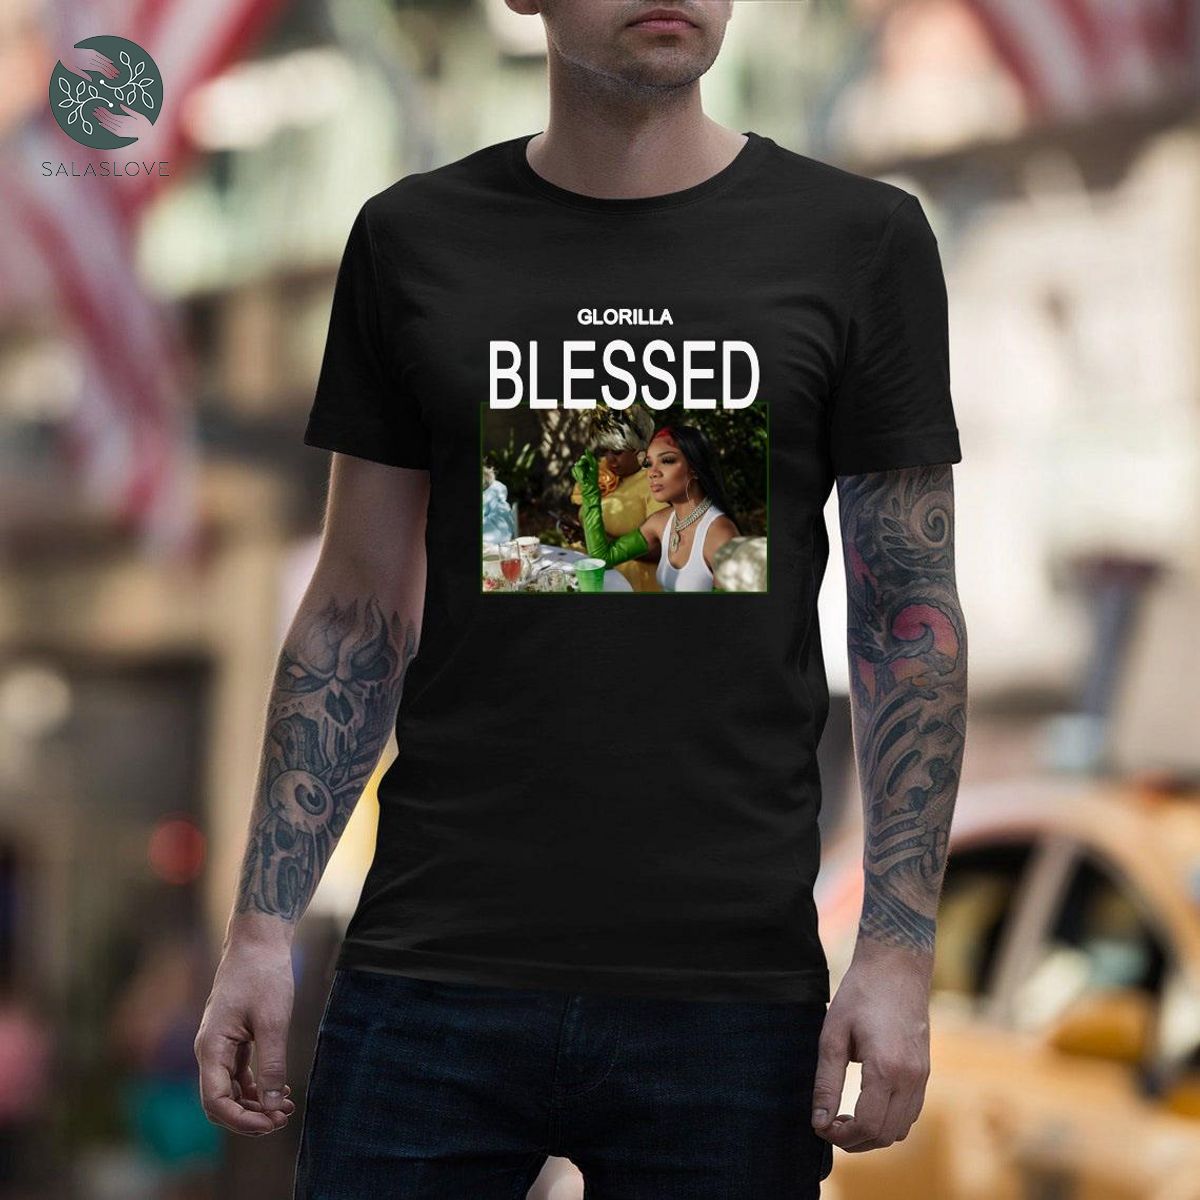 Glorrilla - Blessed New Single Shirt Gift For Fan